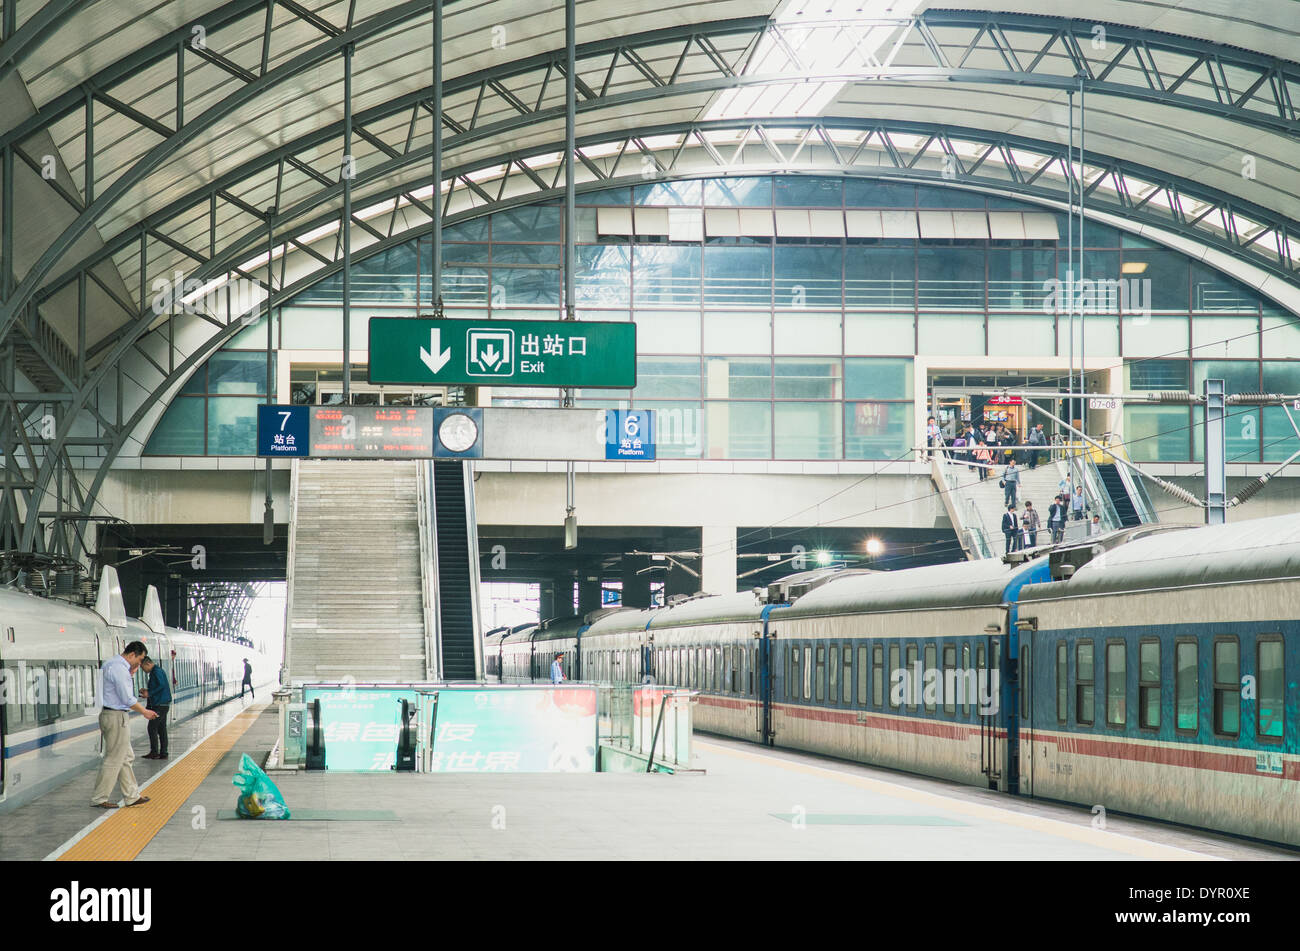 La gare de Wuhan, une gare moderne en Chine. Banque D'Images